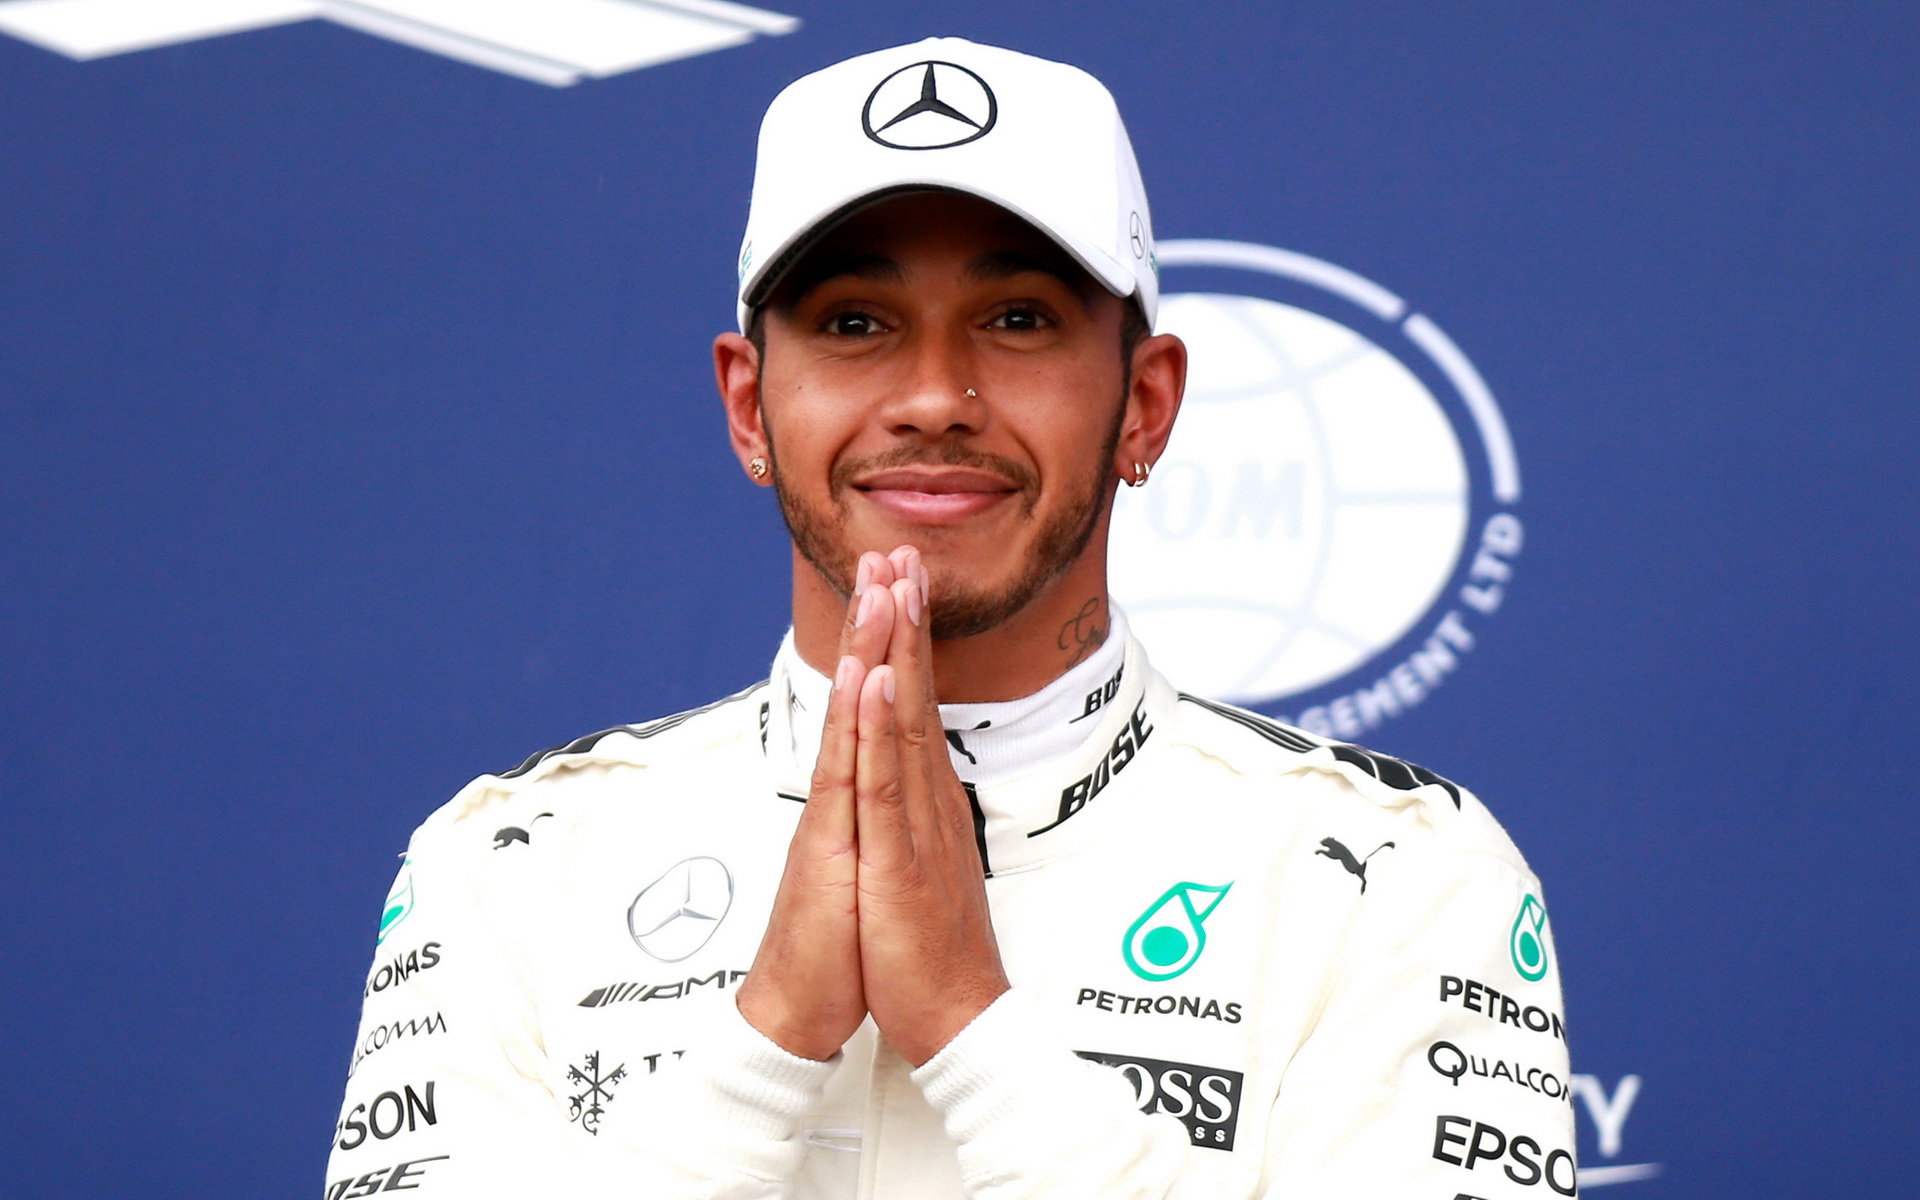 "Nejsem testovač, ale s testováním pneumatik pomůžu," hlásá hrdě Lewis Hamilton